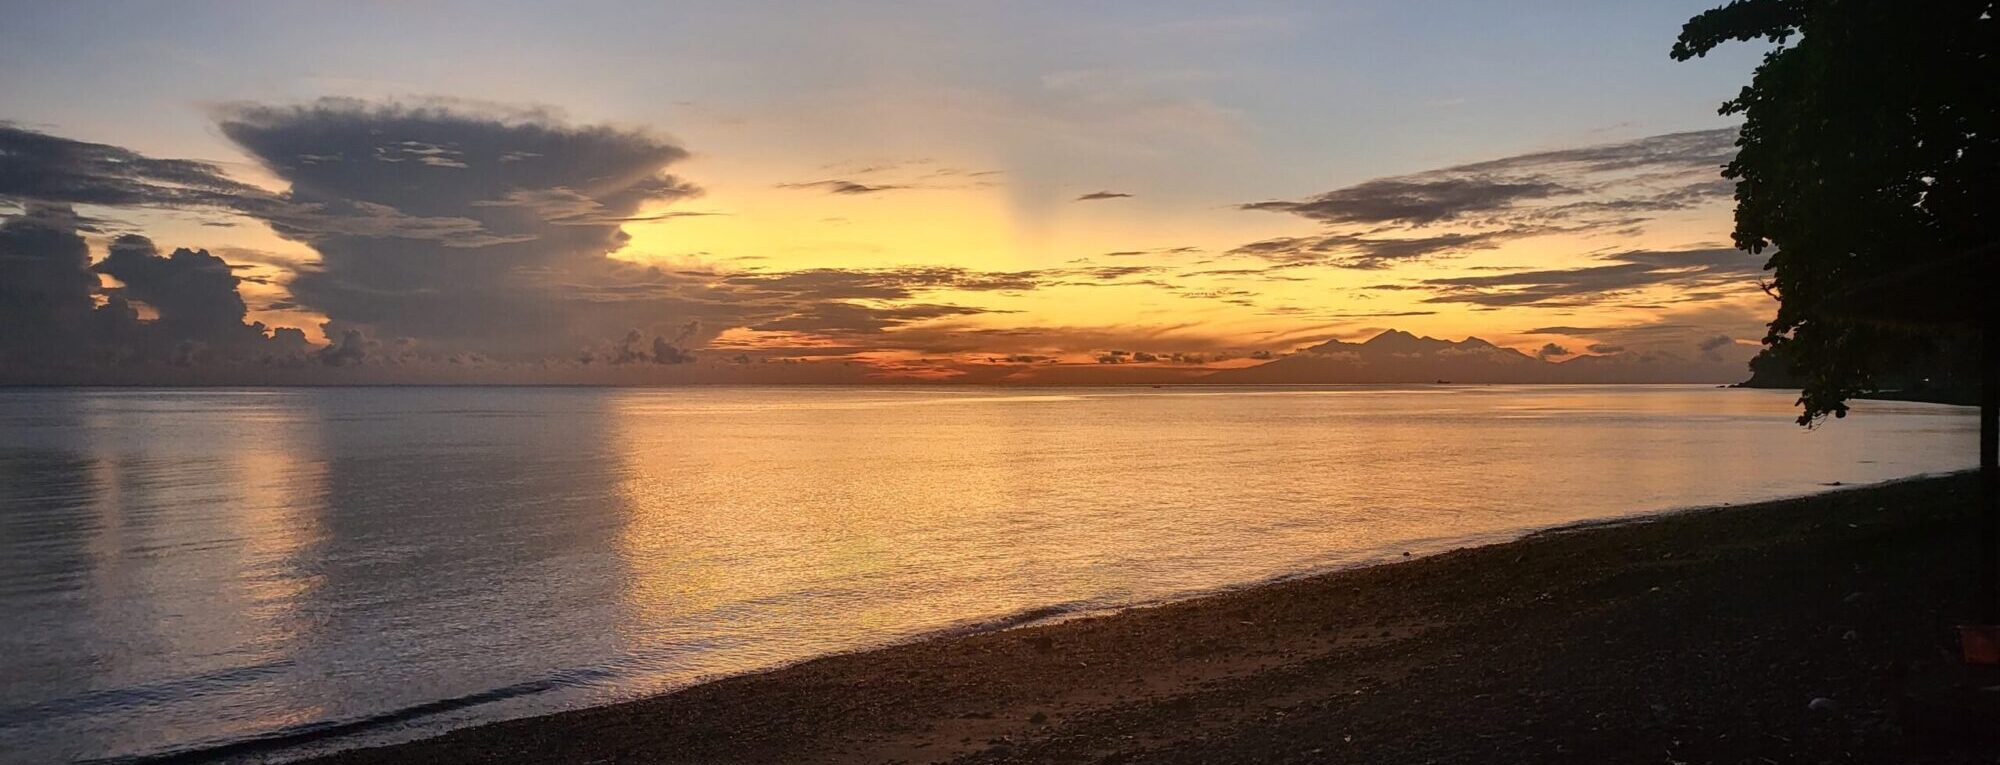 Prachtige zonsondergang in Bali